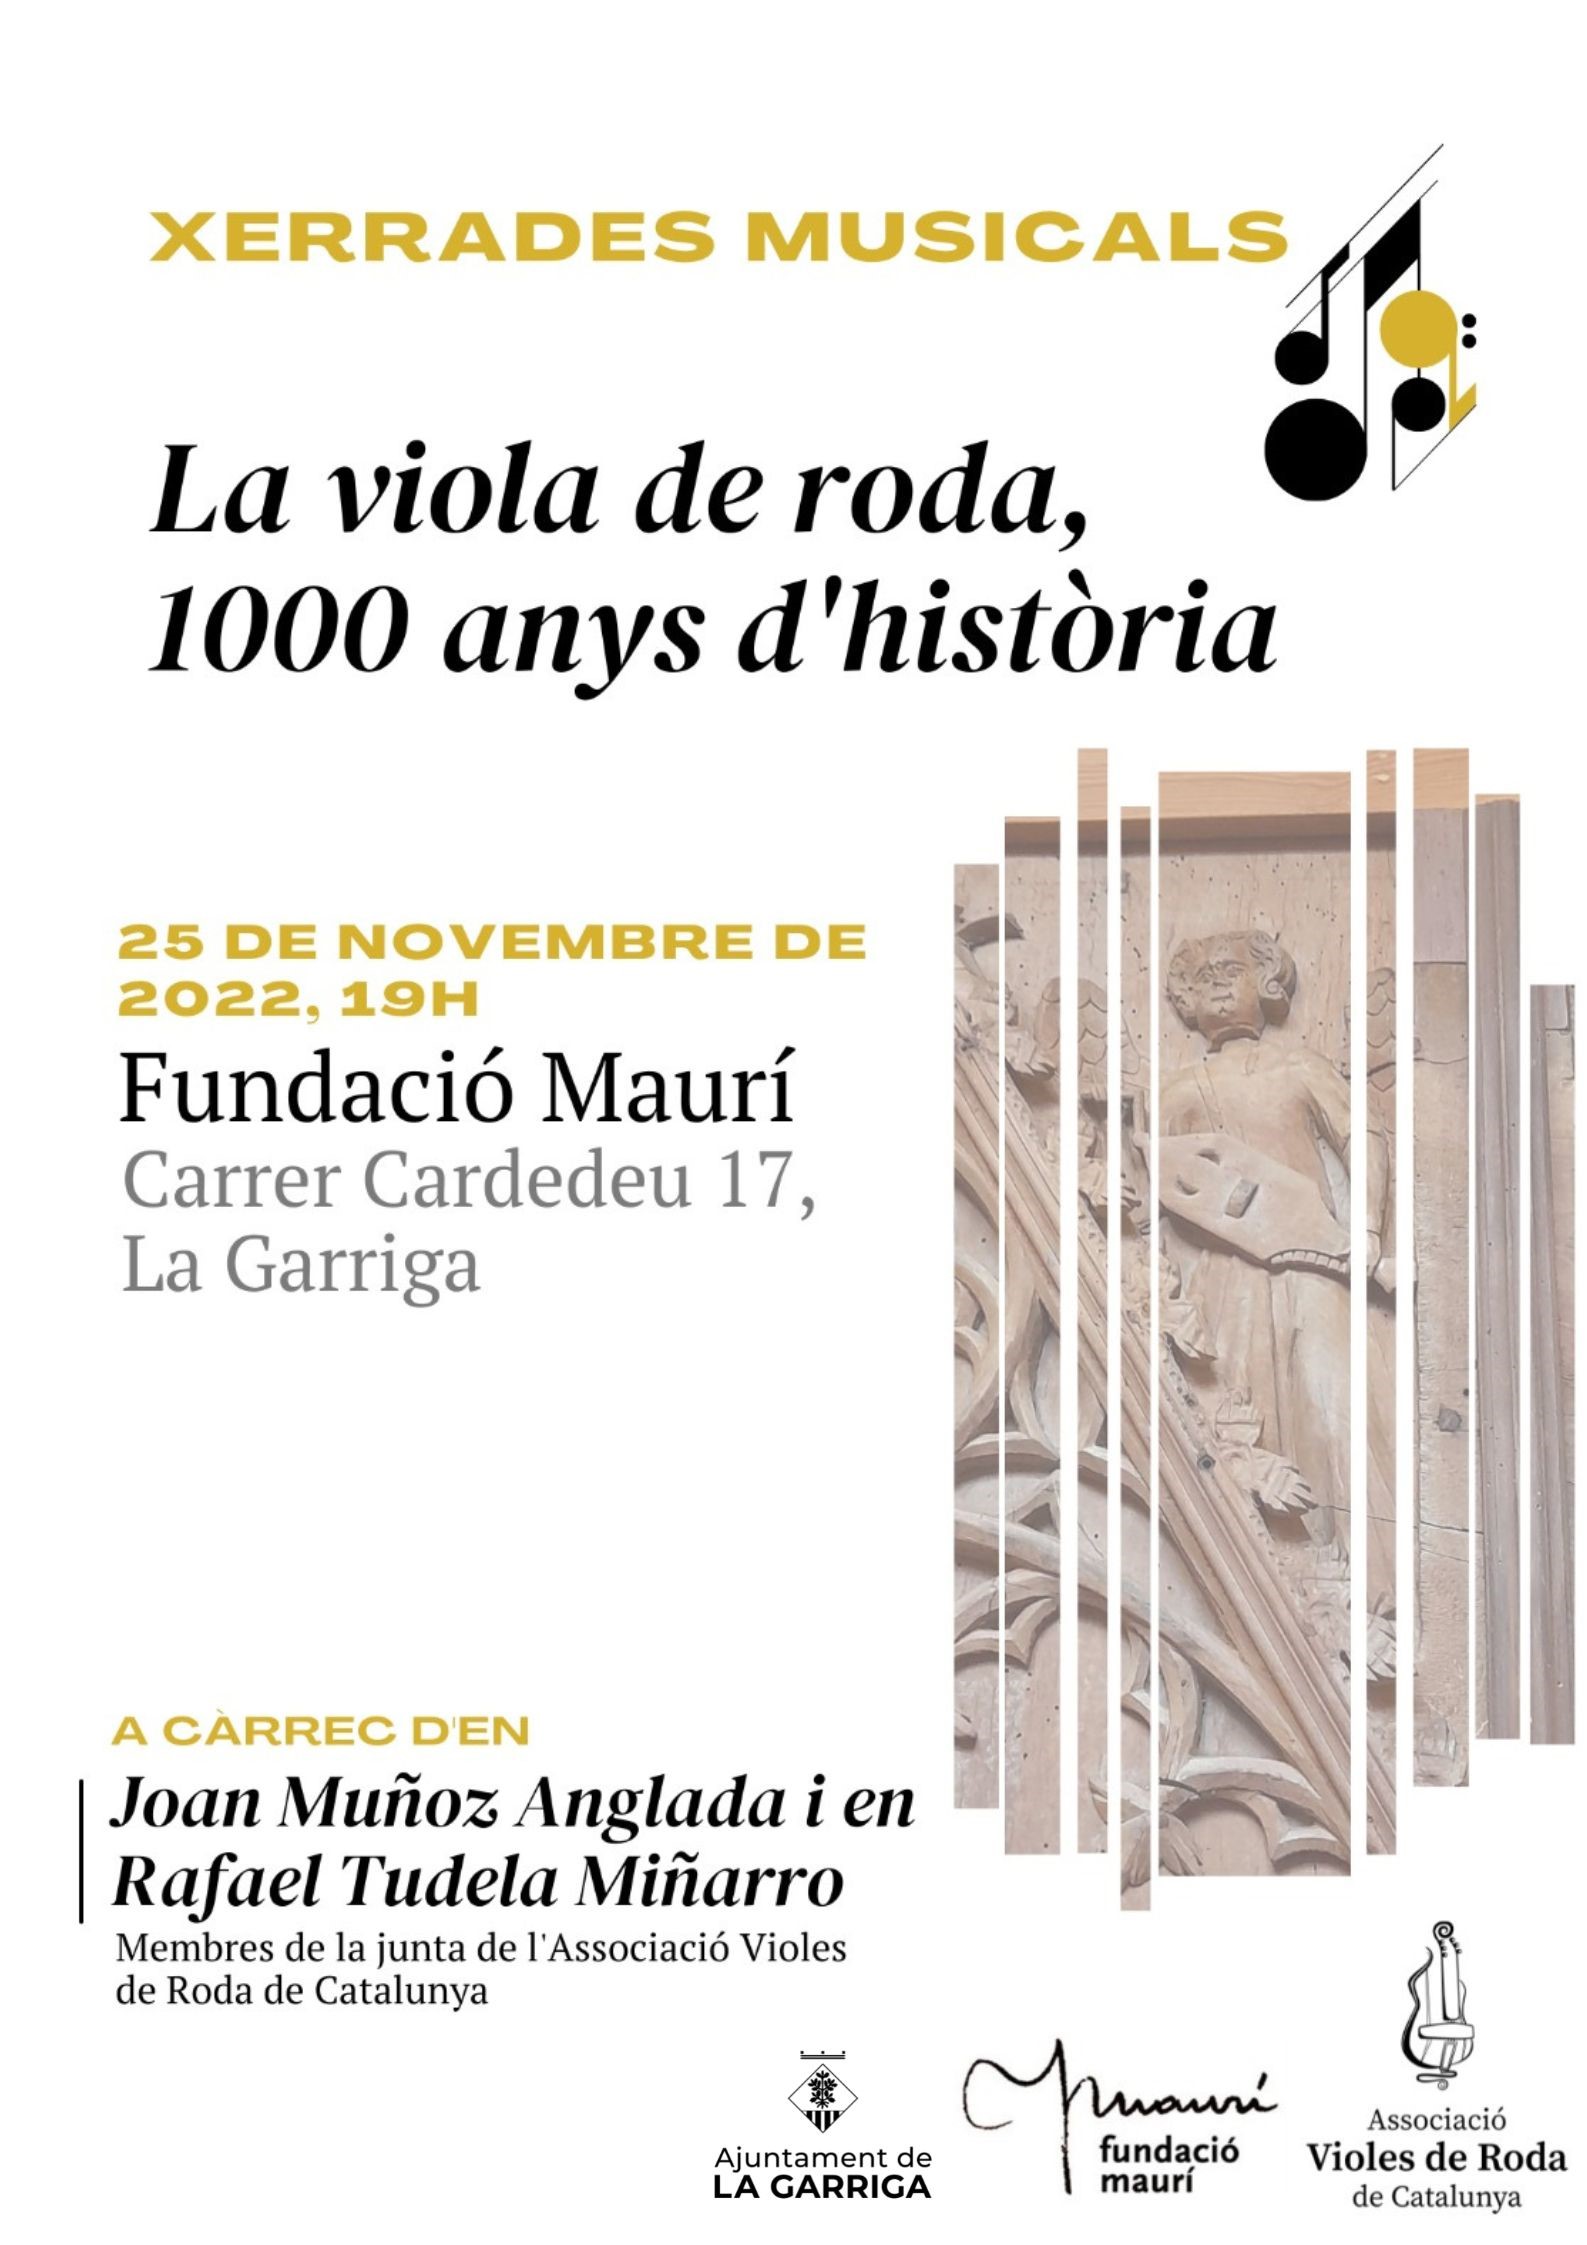 Xerrada concert viola de roda Fundació Maurí la Garriga